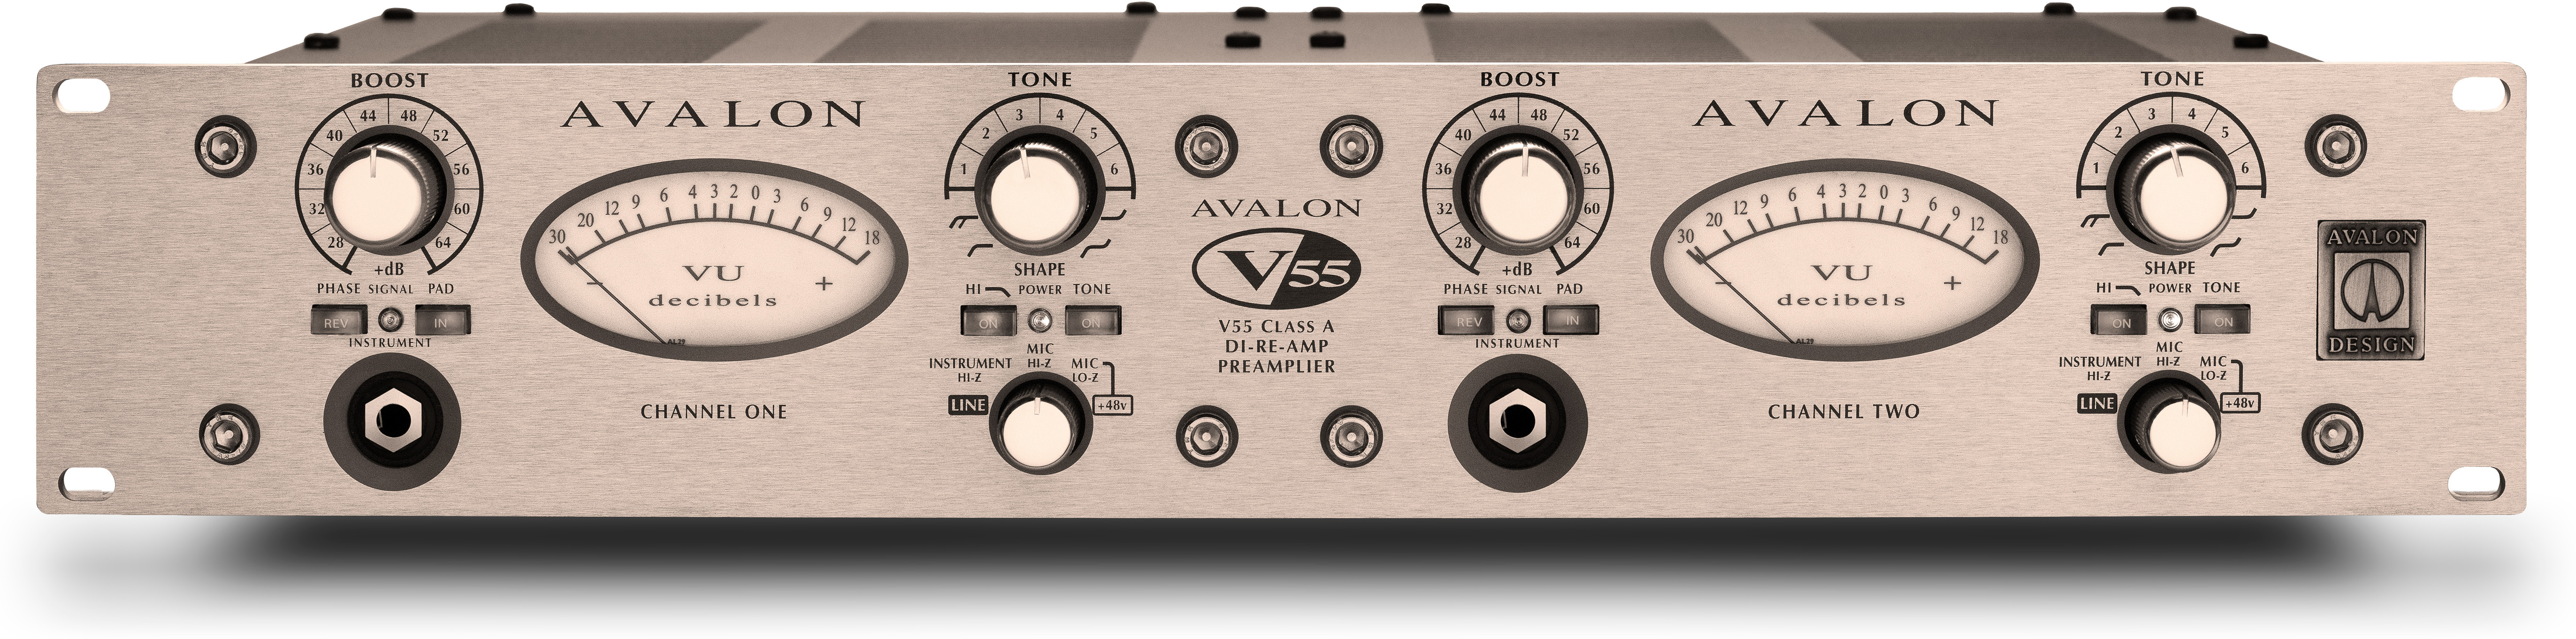 Avalon Design V55 - Voorversterker - Main picture